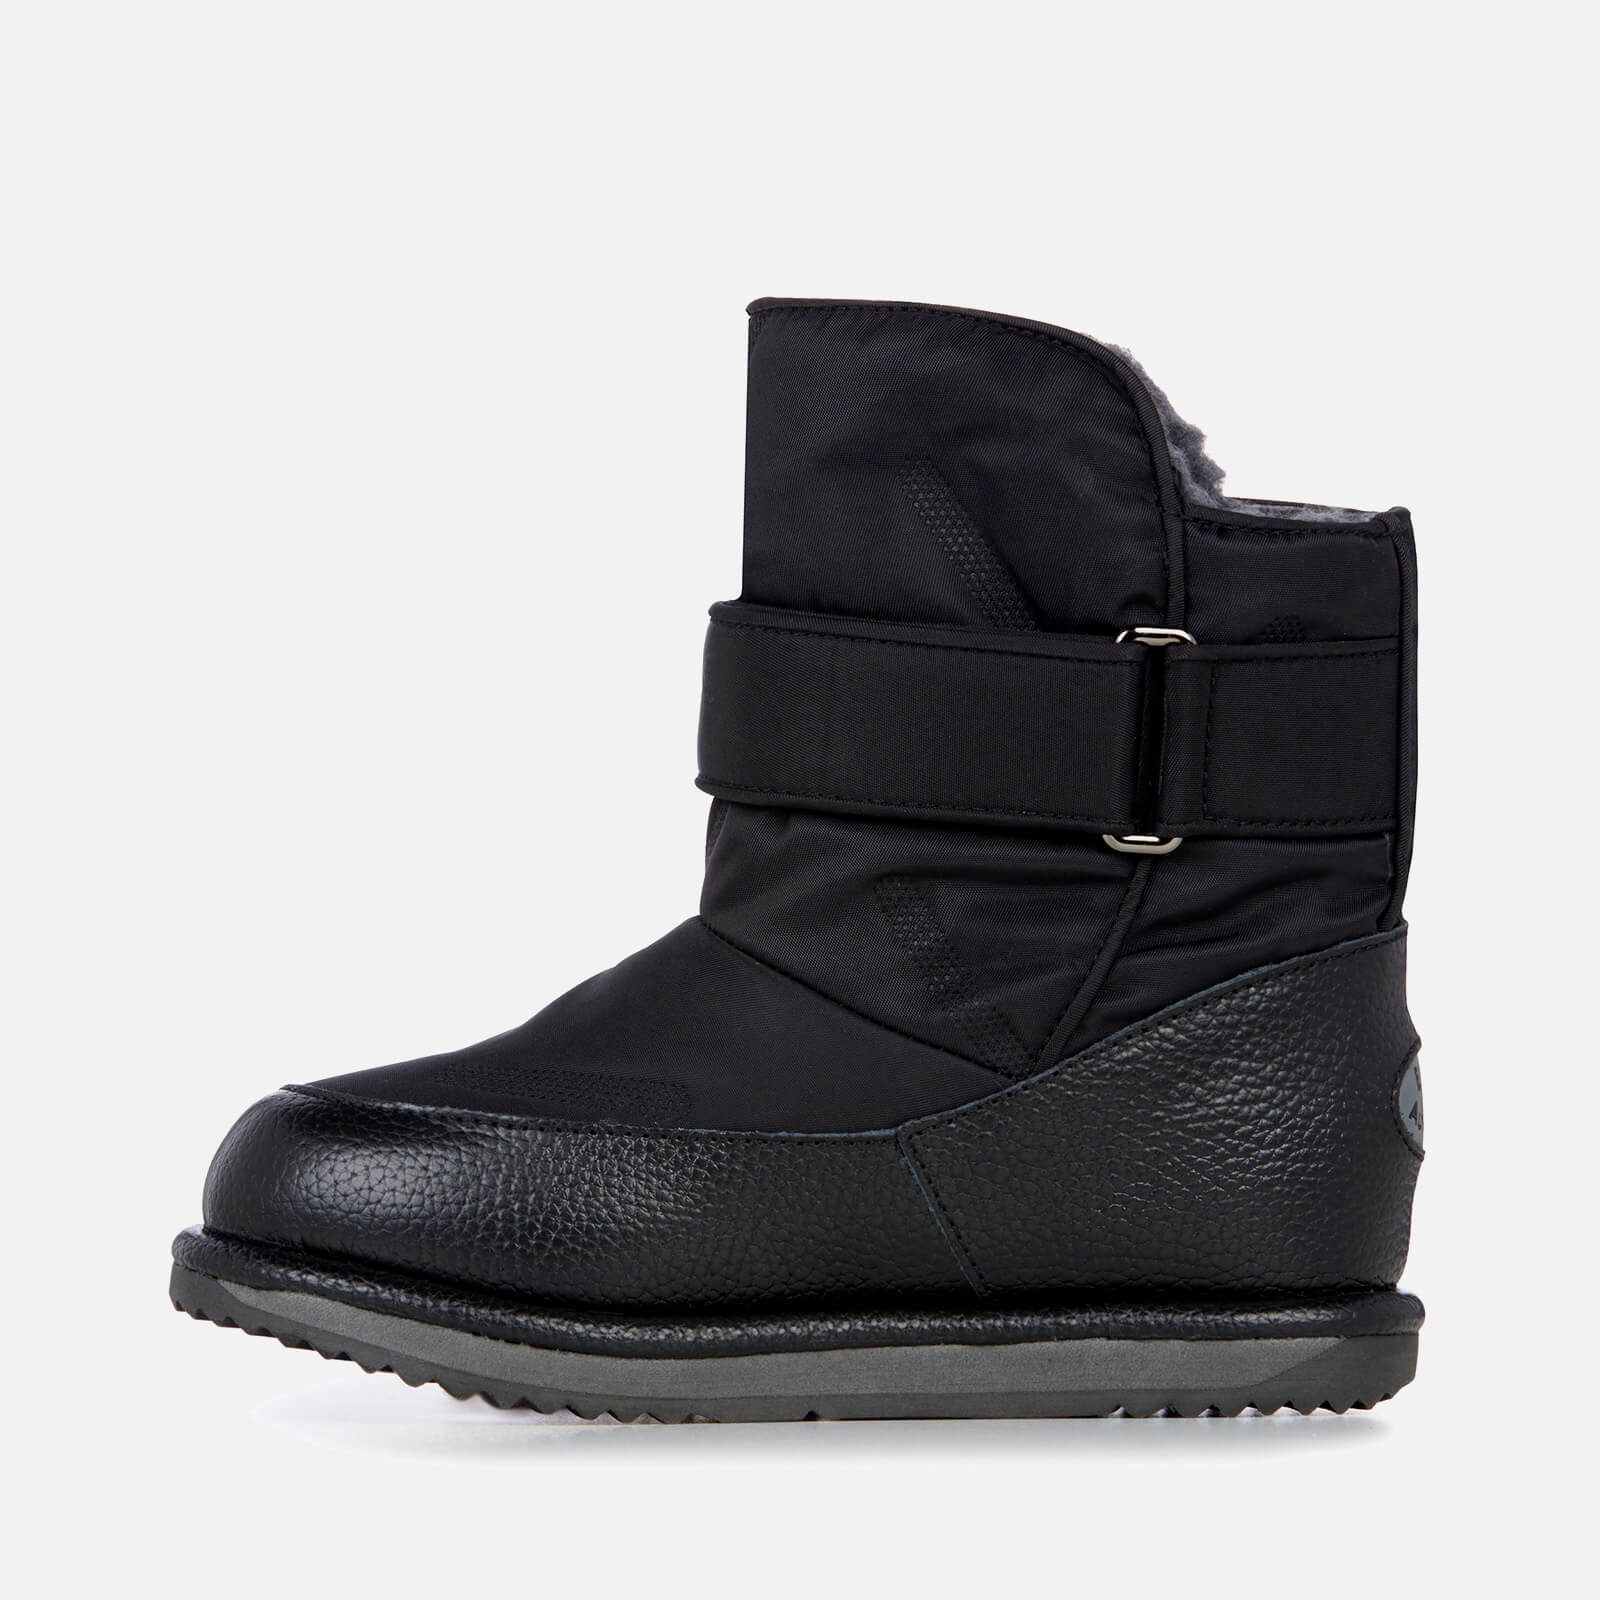 Emu Australia Toddlers' Roth Waterproof Boots - Black - Uk 1 Kids K12360 Childrens Footwear, Black